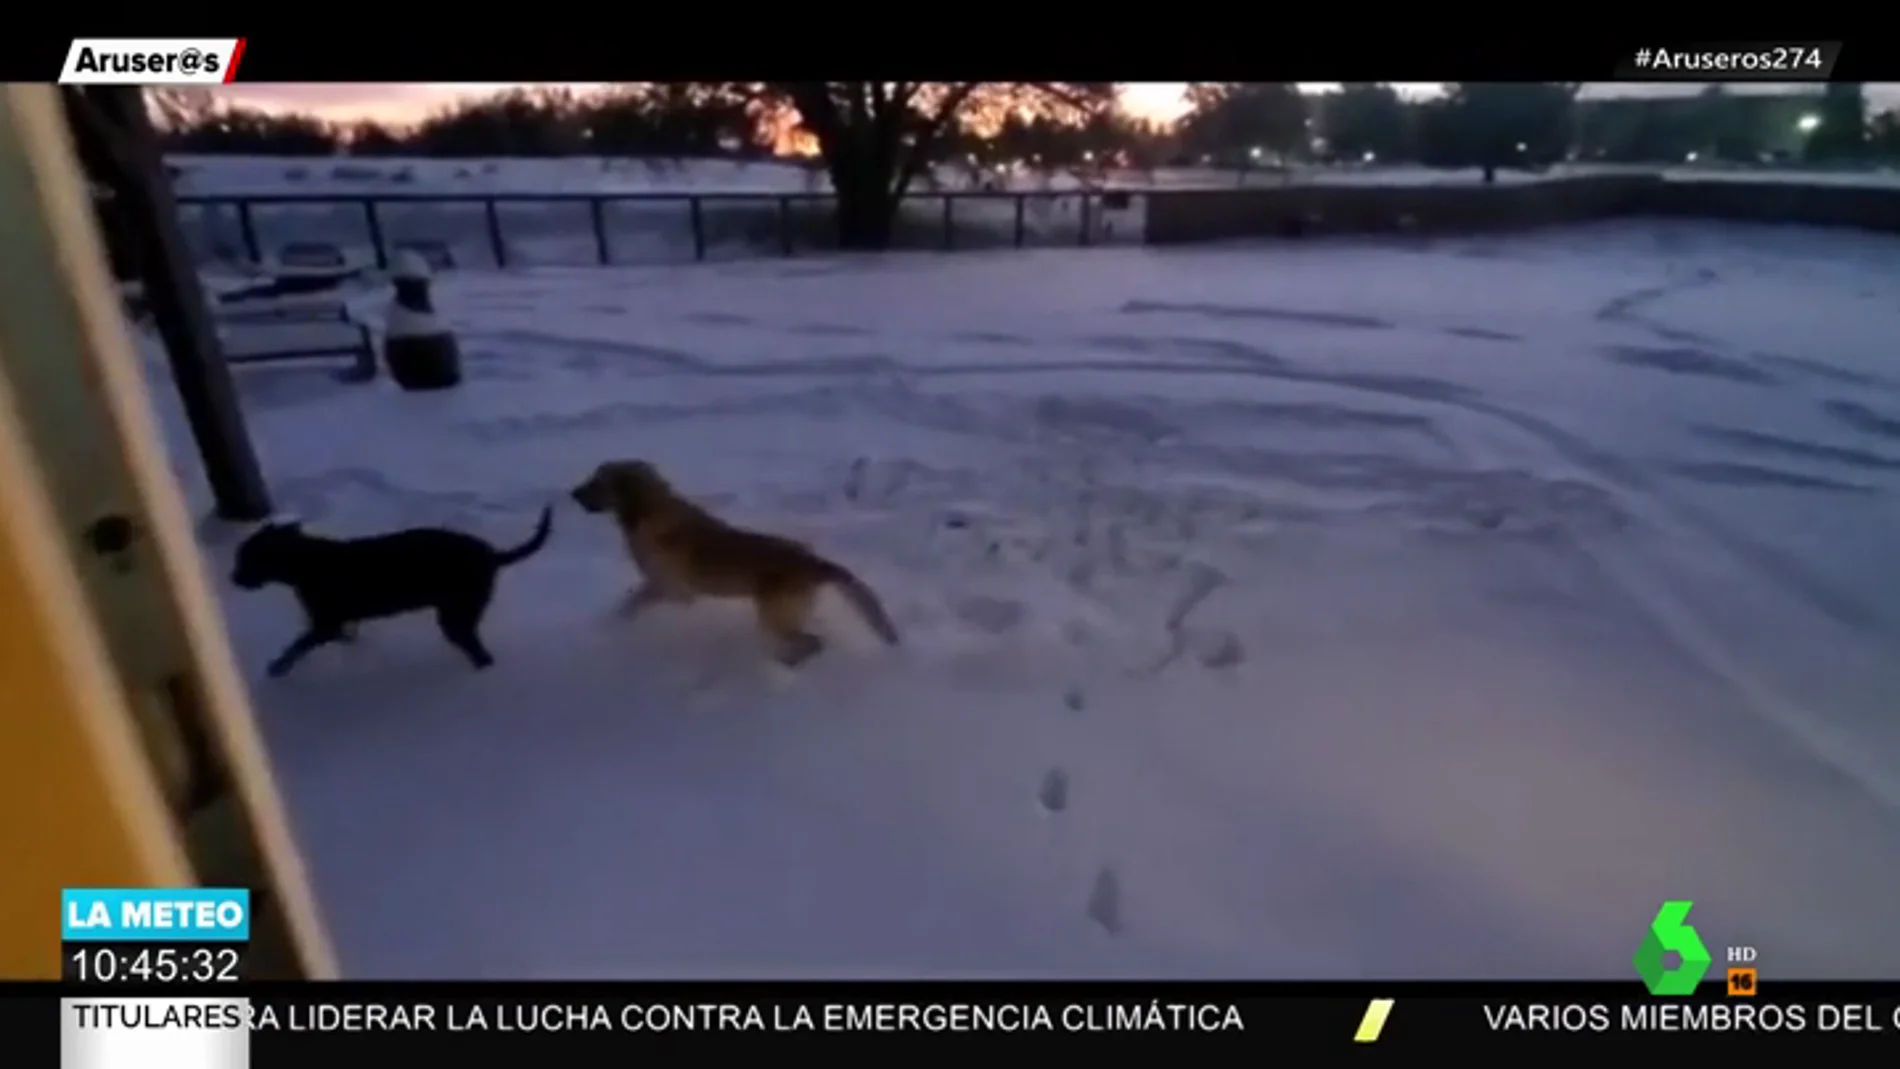 La reacción de dos perros al salir a un jardín lleno de nieve